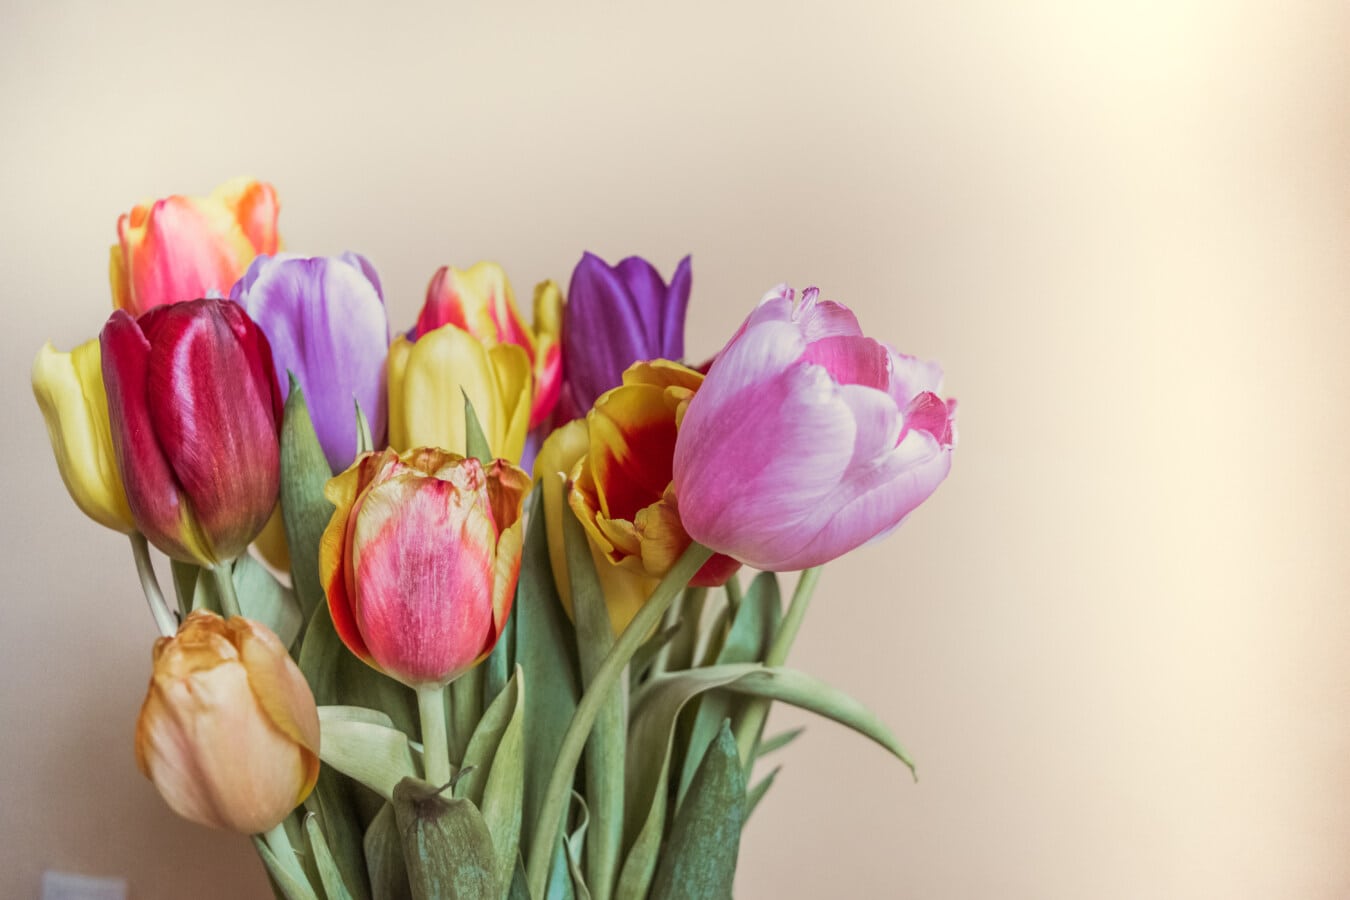 Tulpen, Knospe, Blütenknospe, bunte, Stamm, Blumenstrauß, frisch, elegant, Blumen, saisonale